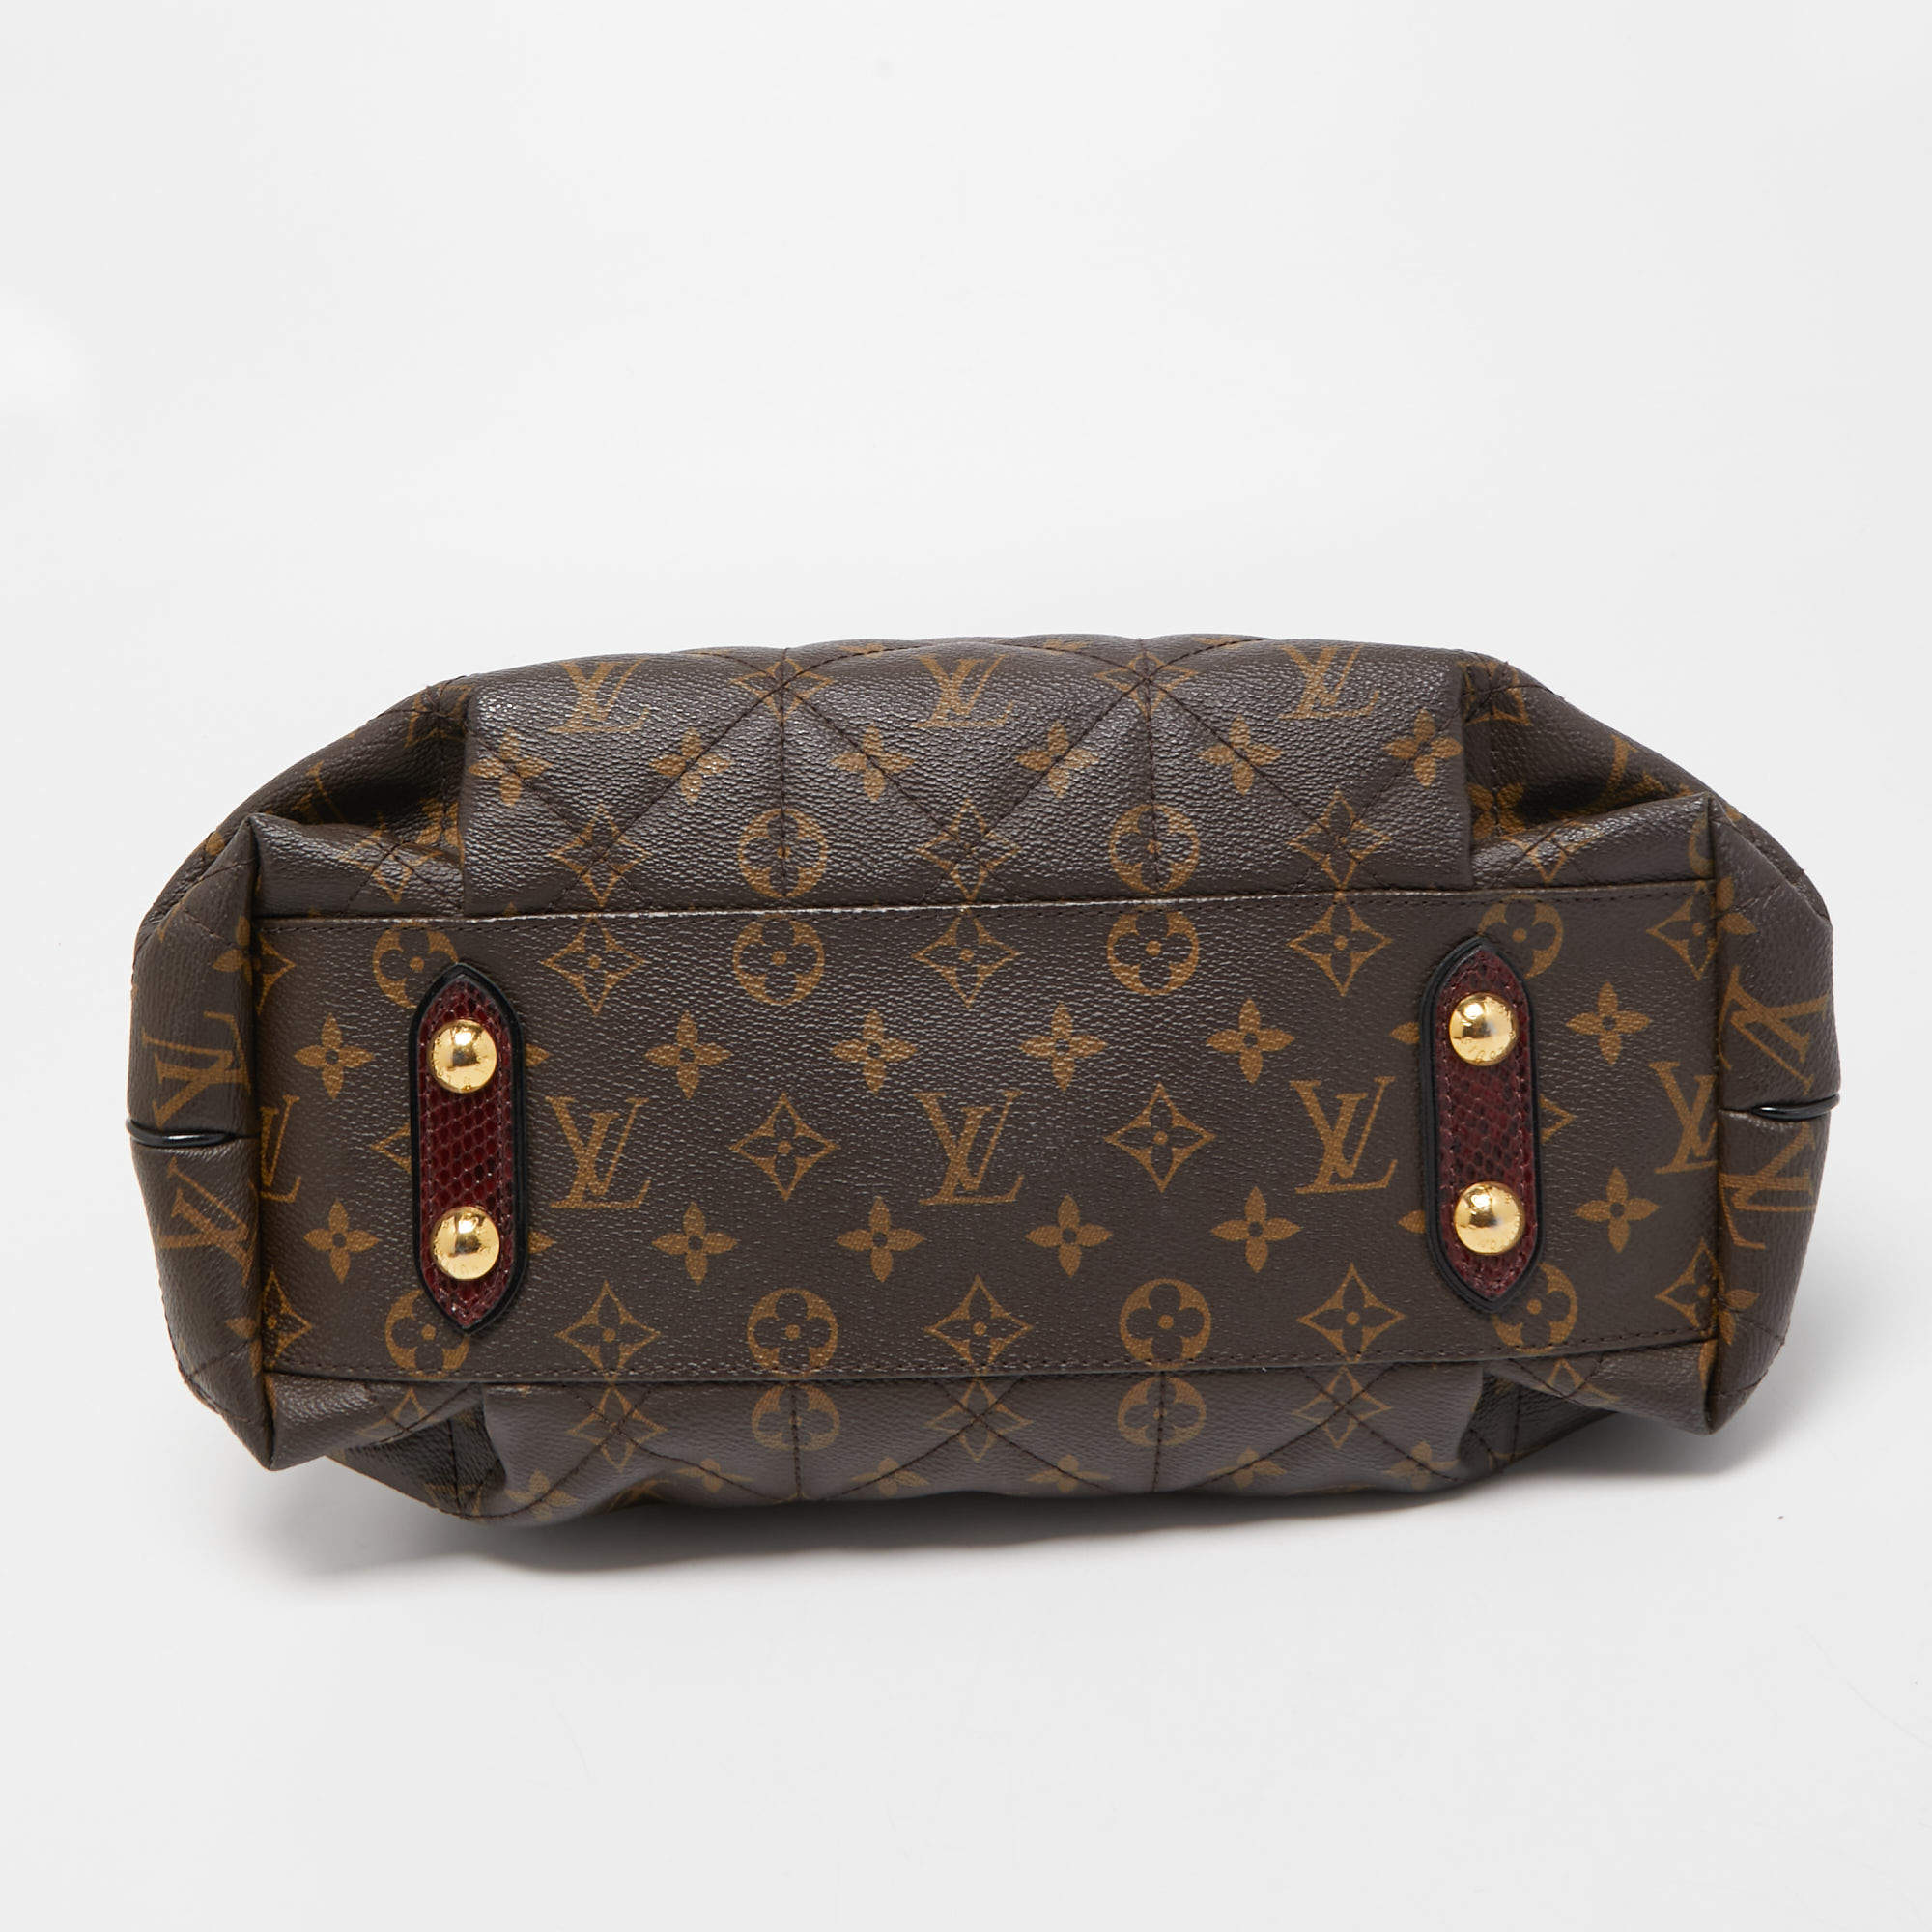 Buy [Bag] LOUIS VUITTON Louis Vuitton Monogram Palace Handbag Tote